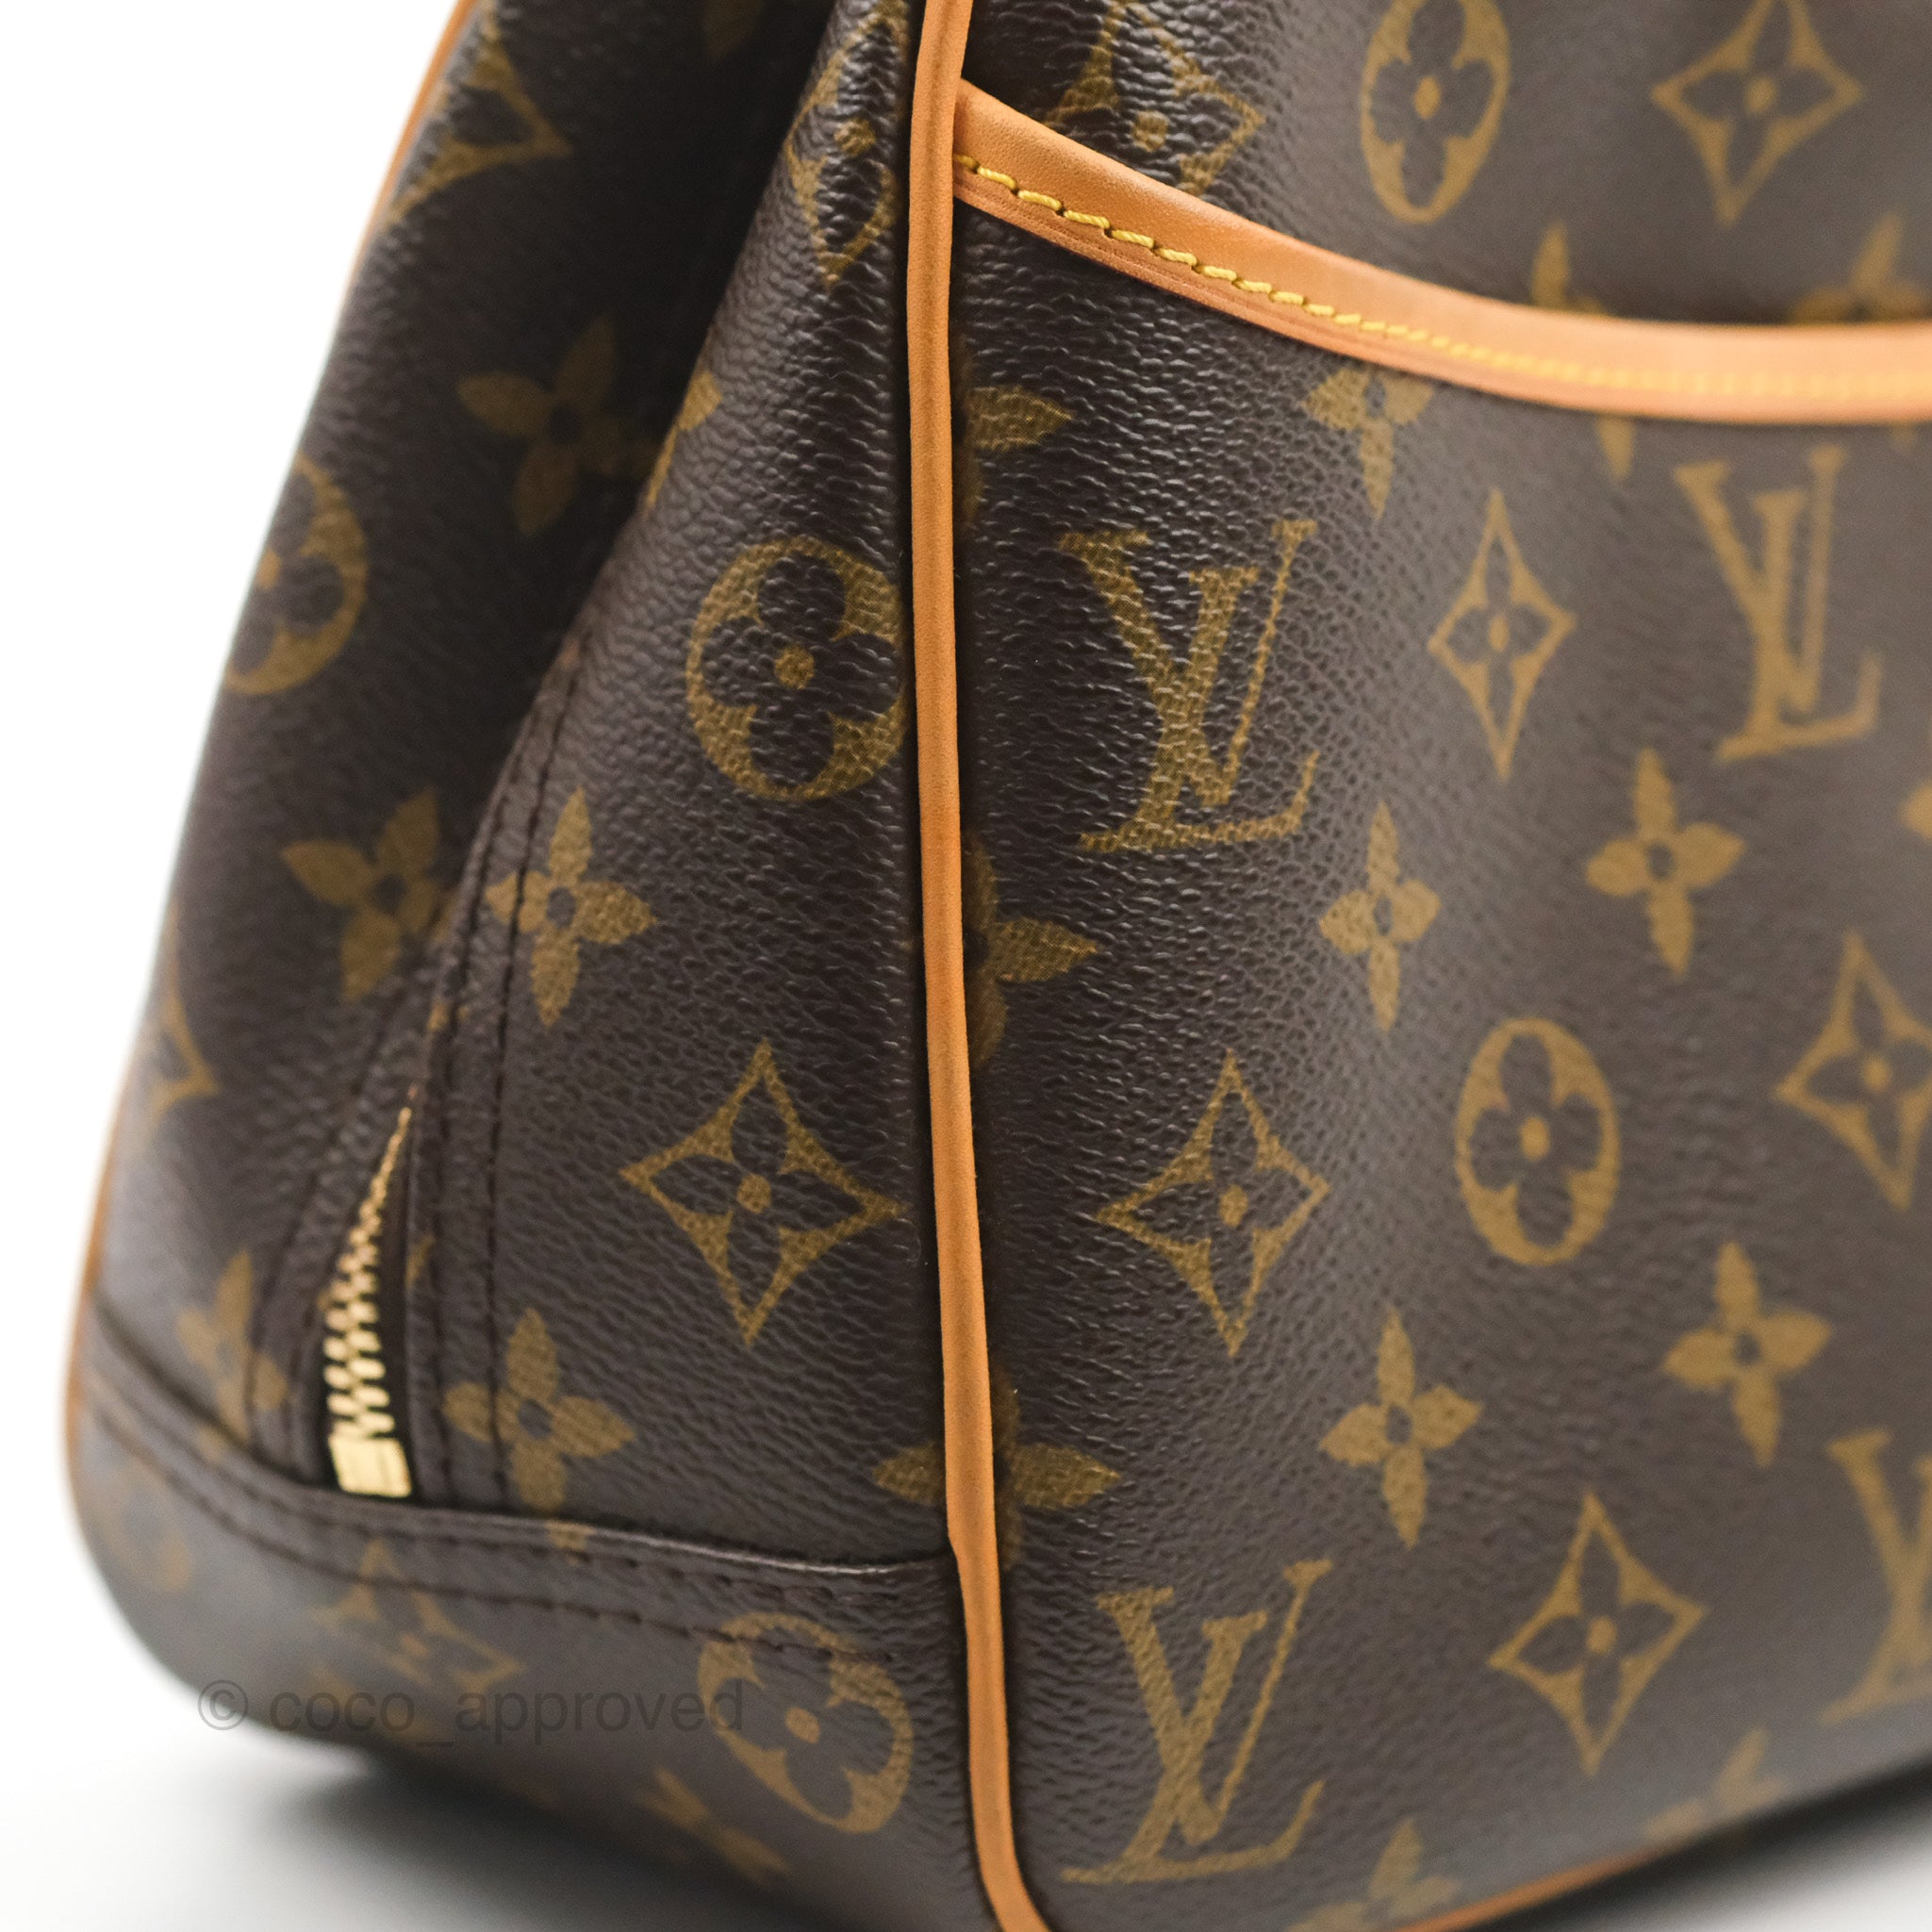 Sold at Auction: Louis Vuitton, LOUIS VUITTON MONOGRAM TROUVILLE &  DEAUVILLE BAGS